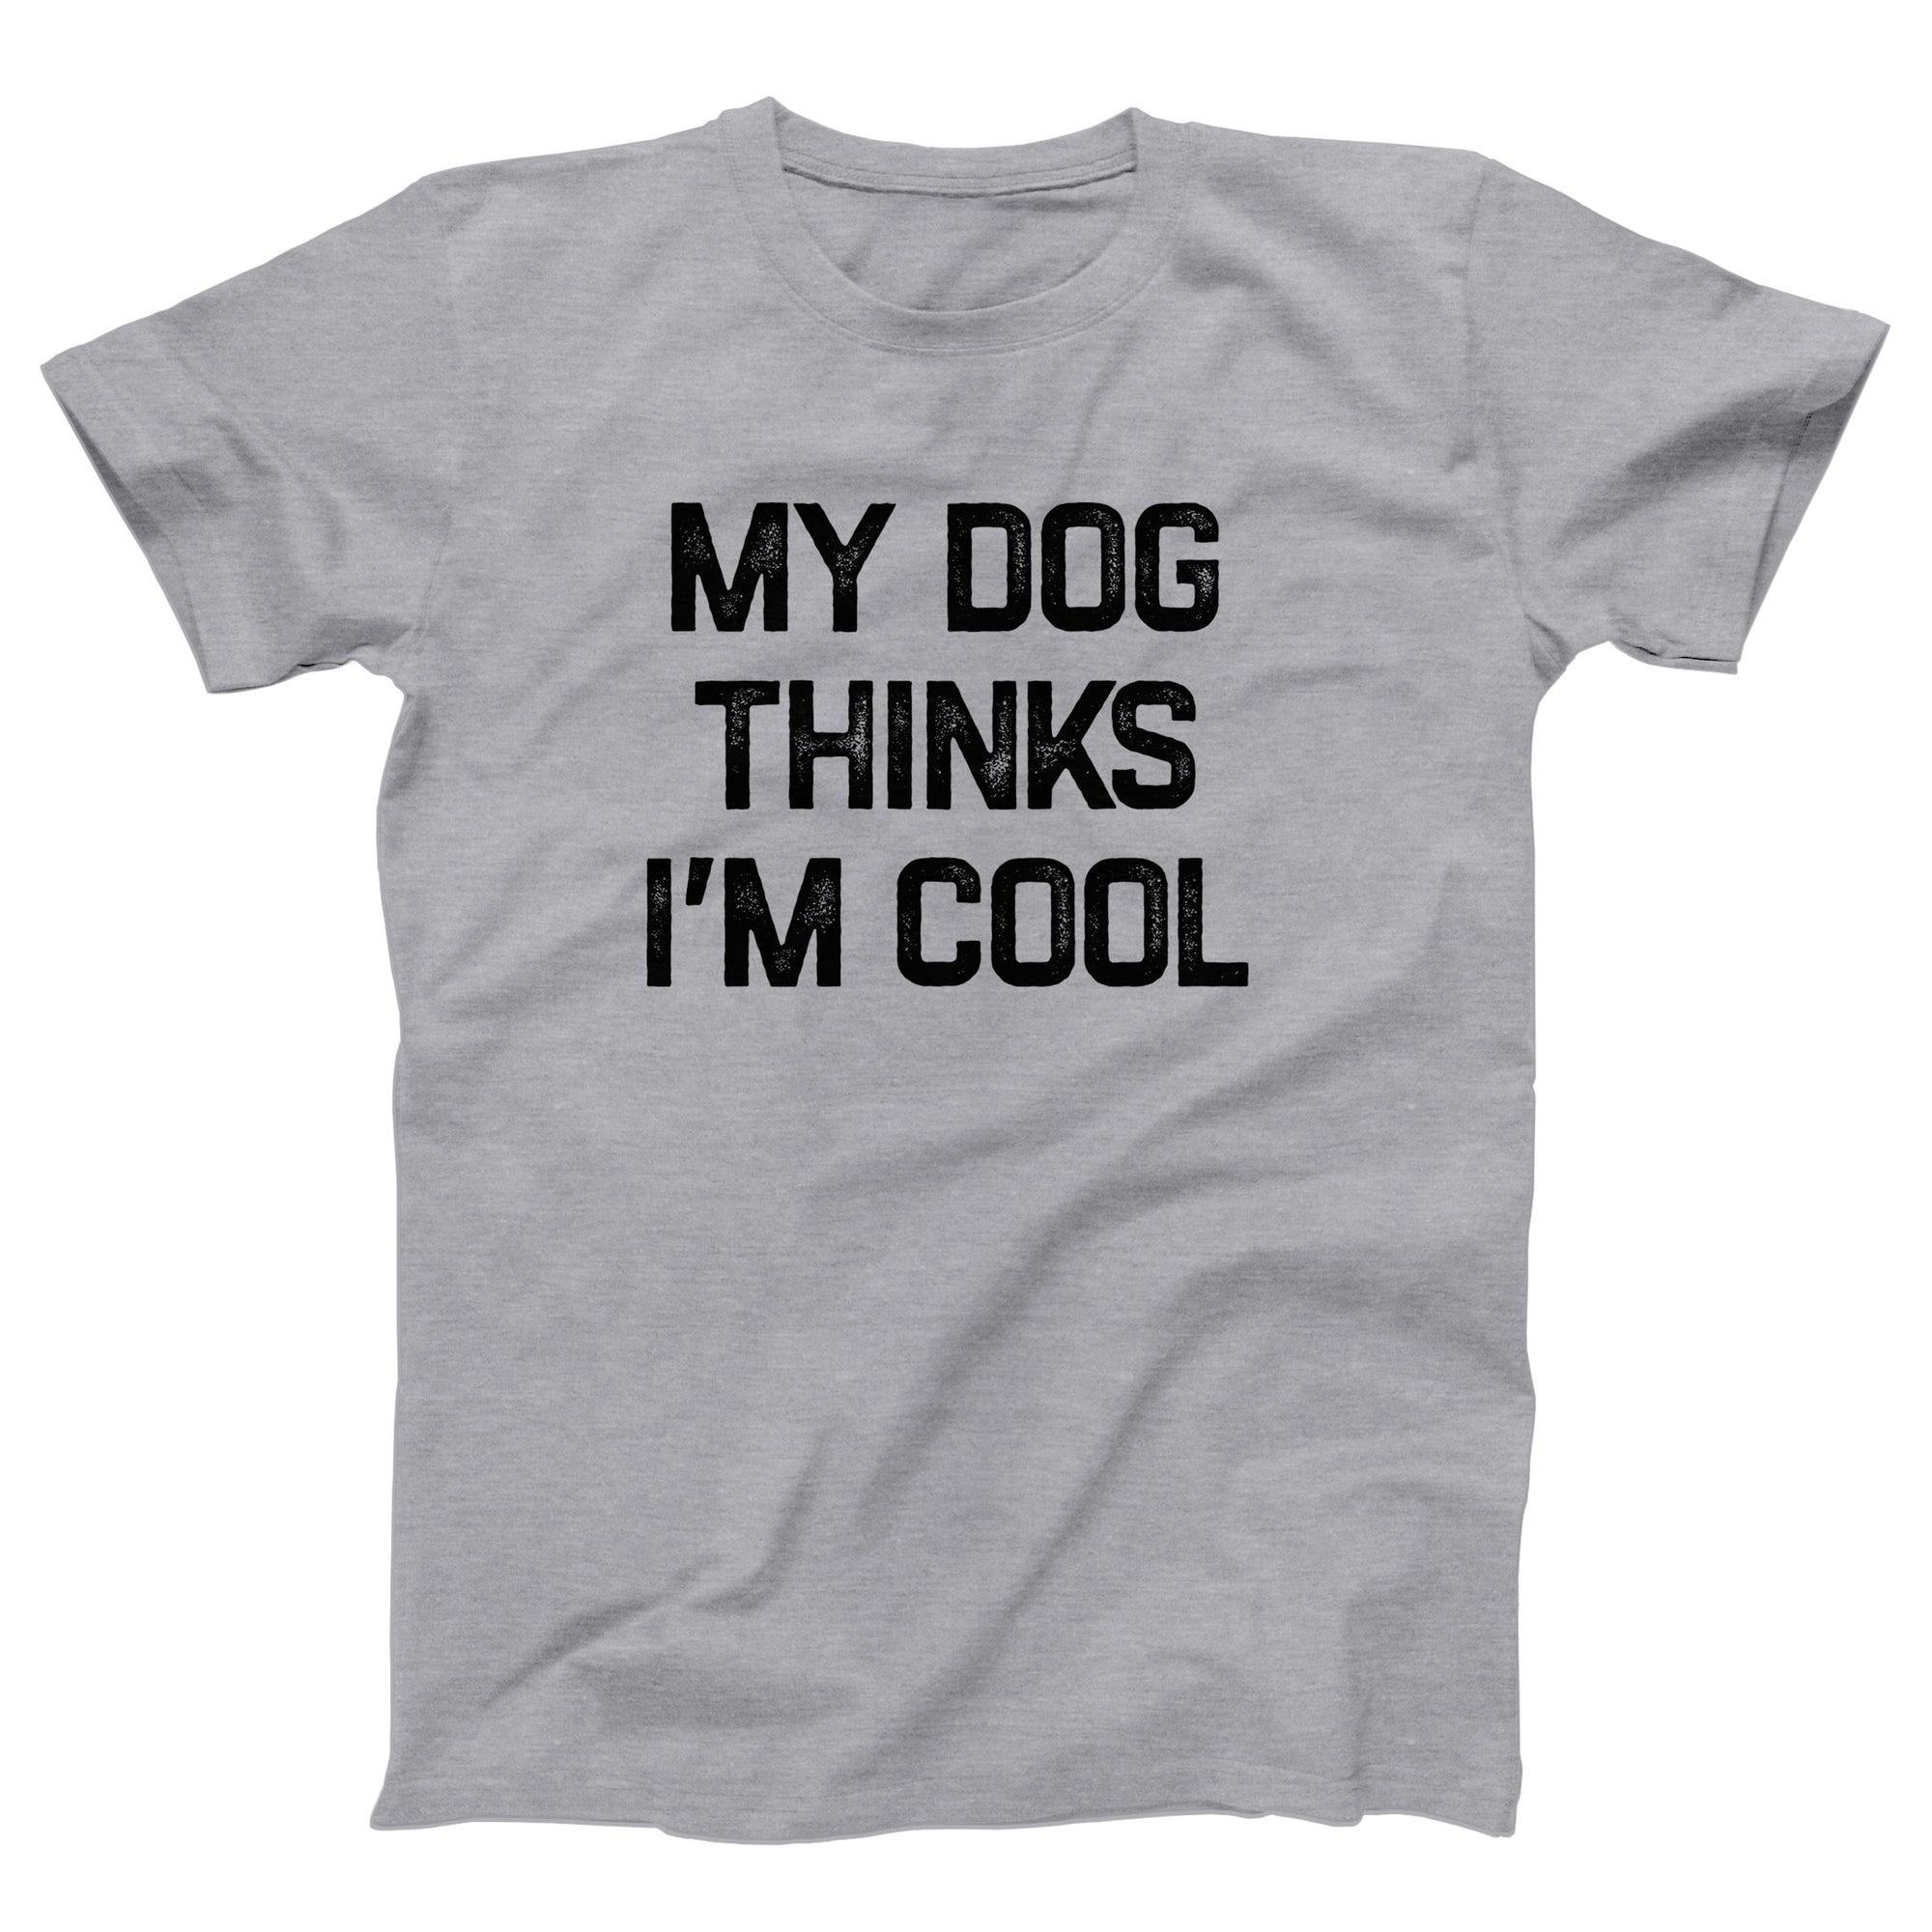 My Dog Thinks I'm Cool Adult Unisex T-Shirt - anishphilip